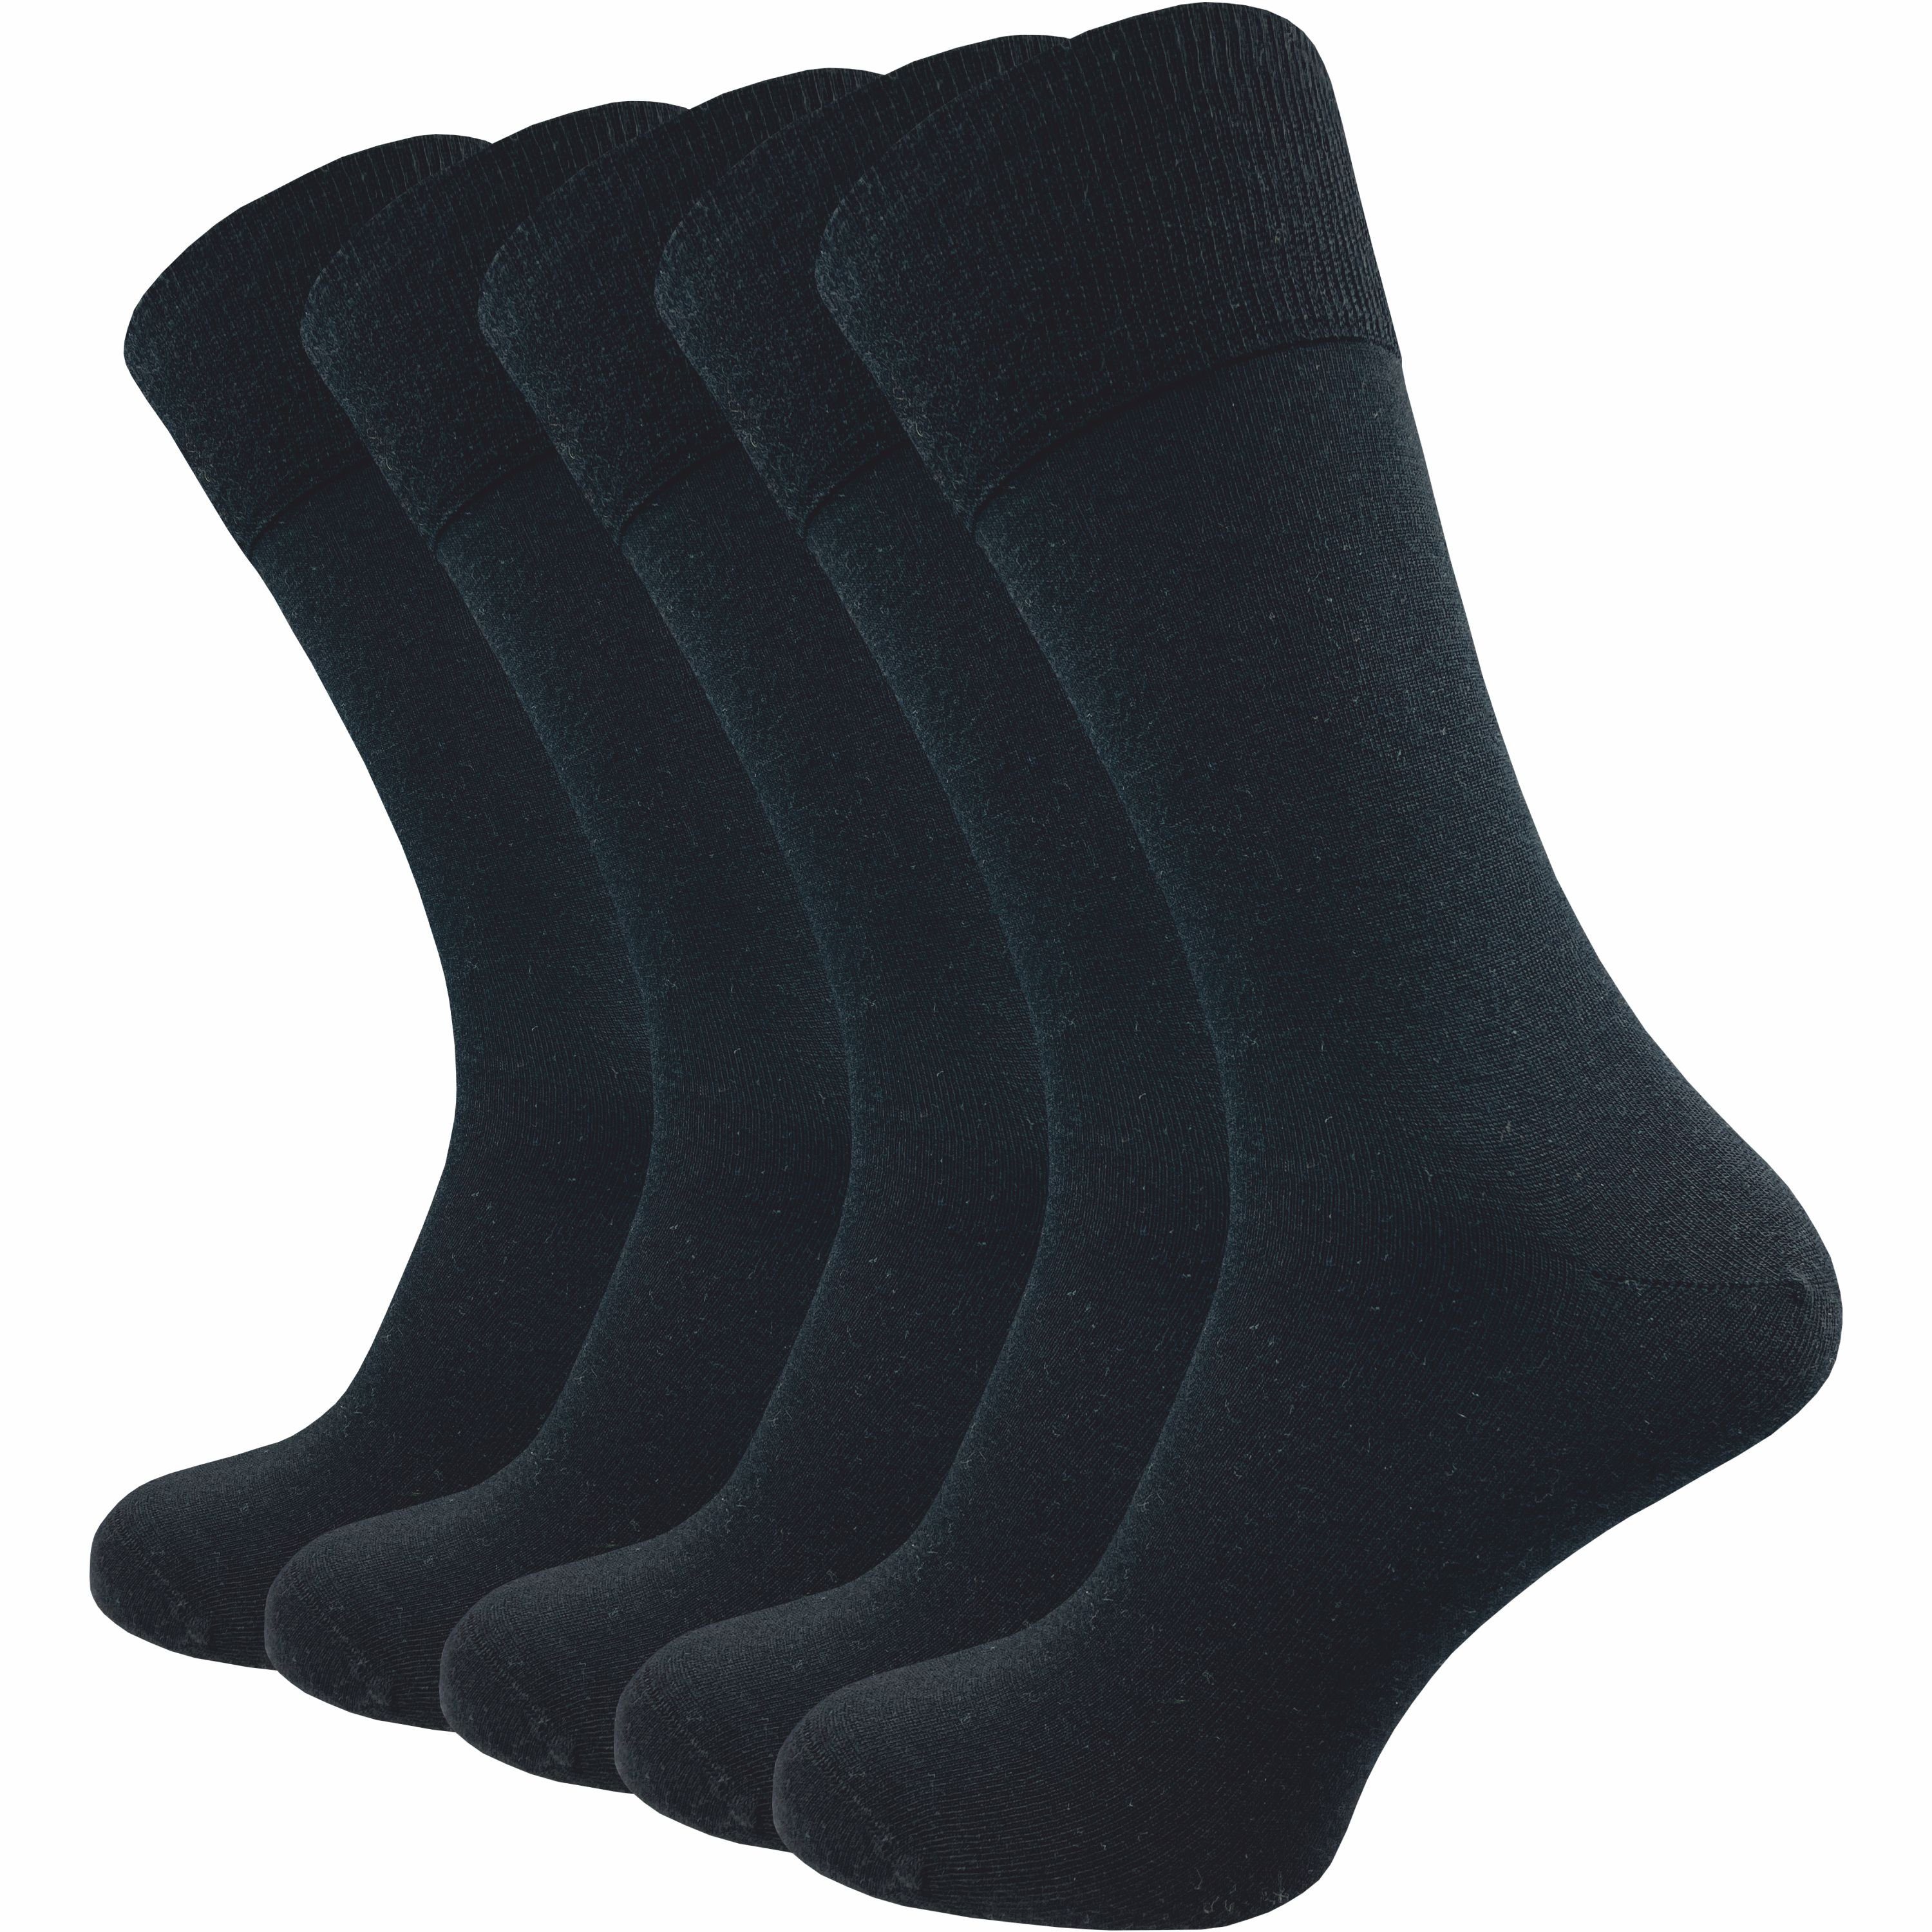 GAWILO Businesssocken für Herren aus 64% Schurwolle - Klimaregulierende Merino Socken (5 Paar) Socken aus Merino Wolle kühlen im Sommer und wärmen im Winter schwarz